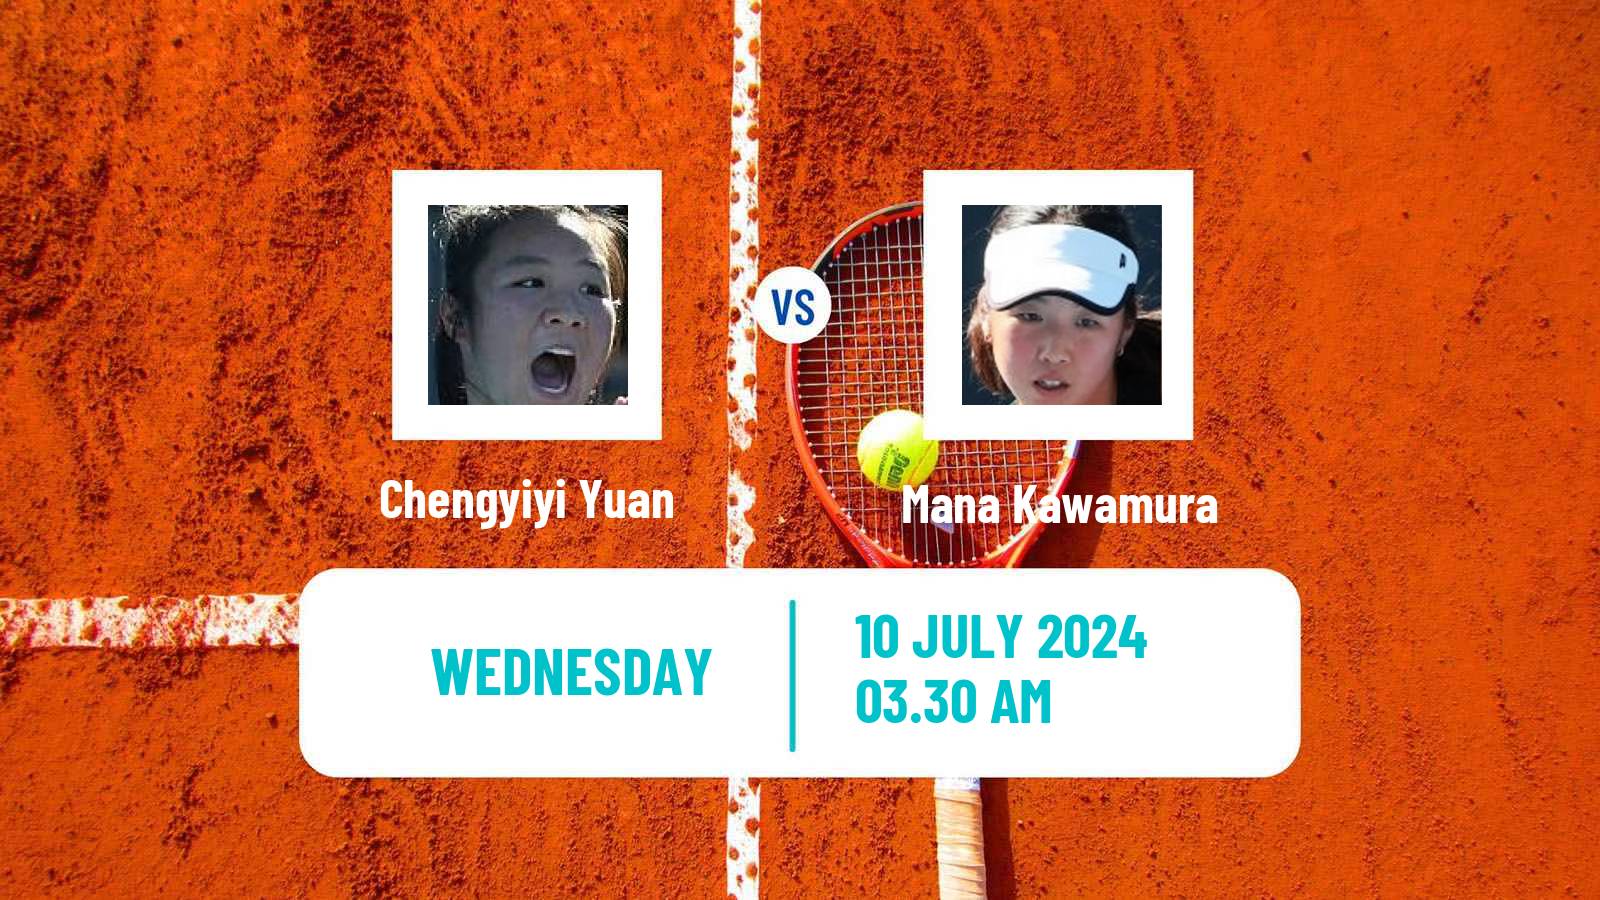 Tennis ITF W35 Tianjin Women Chengyiyi Yuan - Mana Kawamura